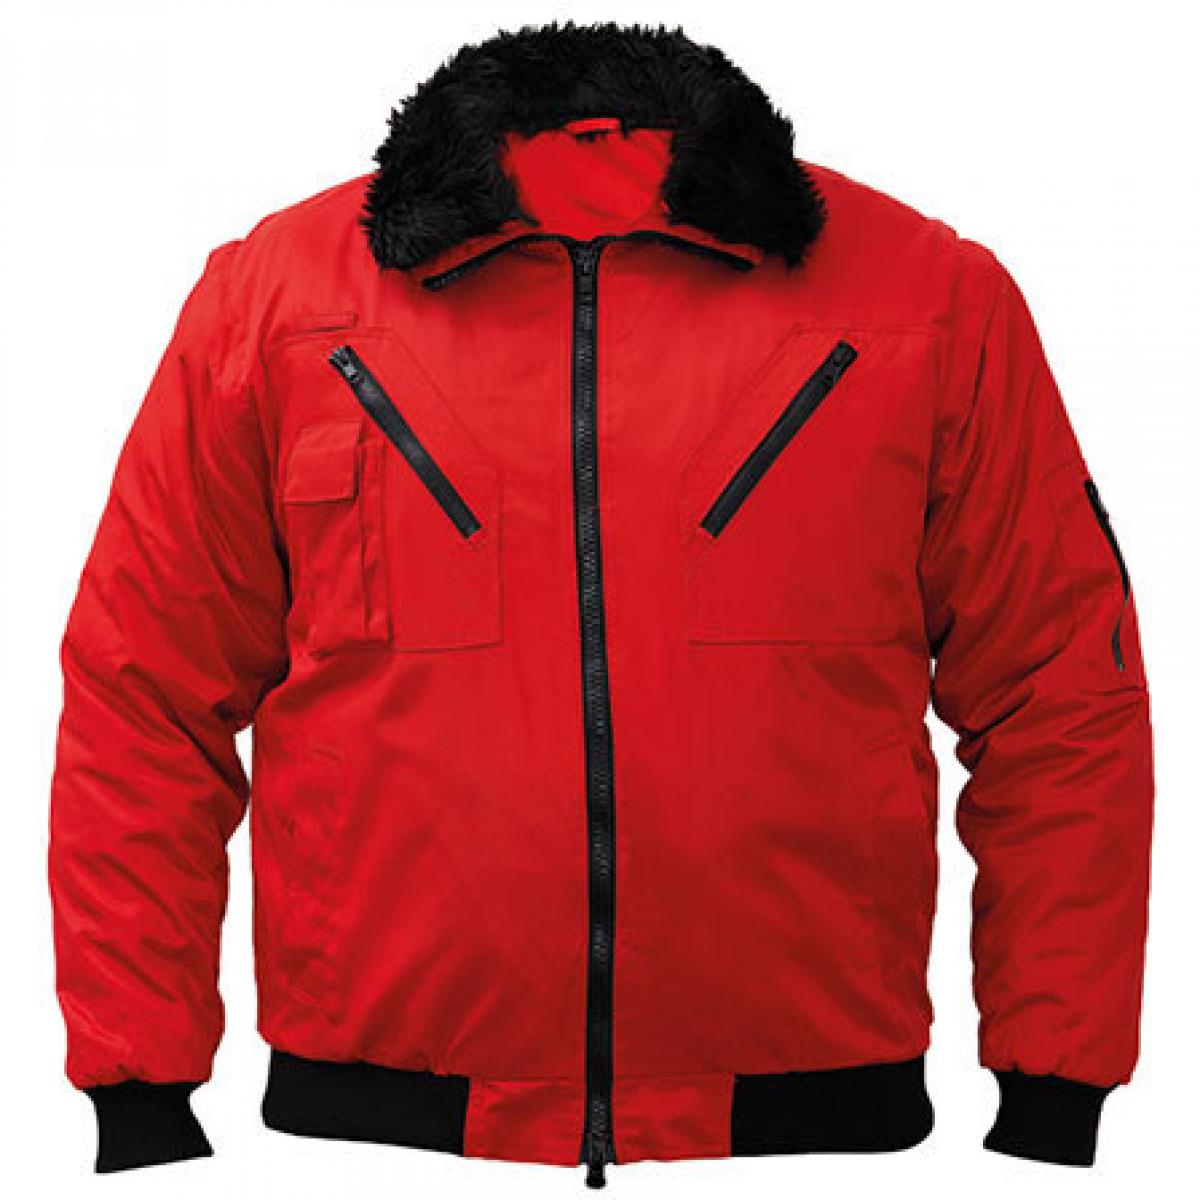 Hersteller: Korntex Herstellernummer: KXPJ Artikelbezeichnung: Pilot Jacket, Vier-in-eins Pilotenjacke Farbe: Red